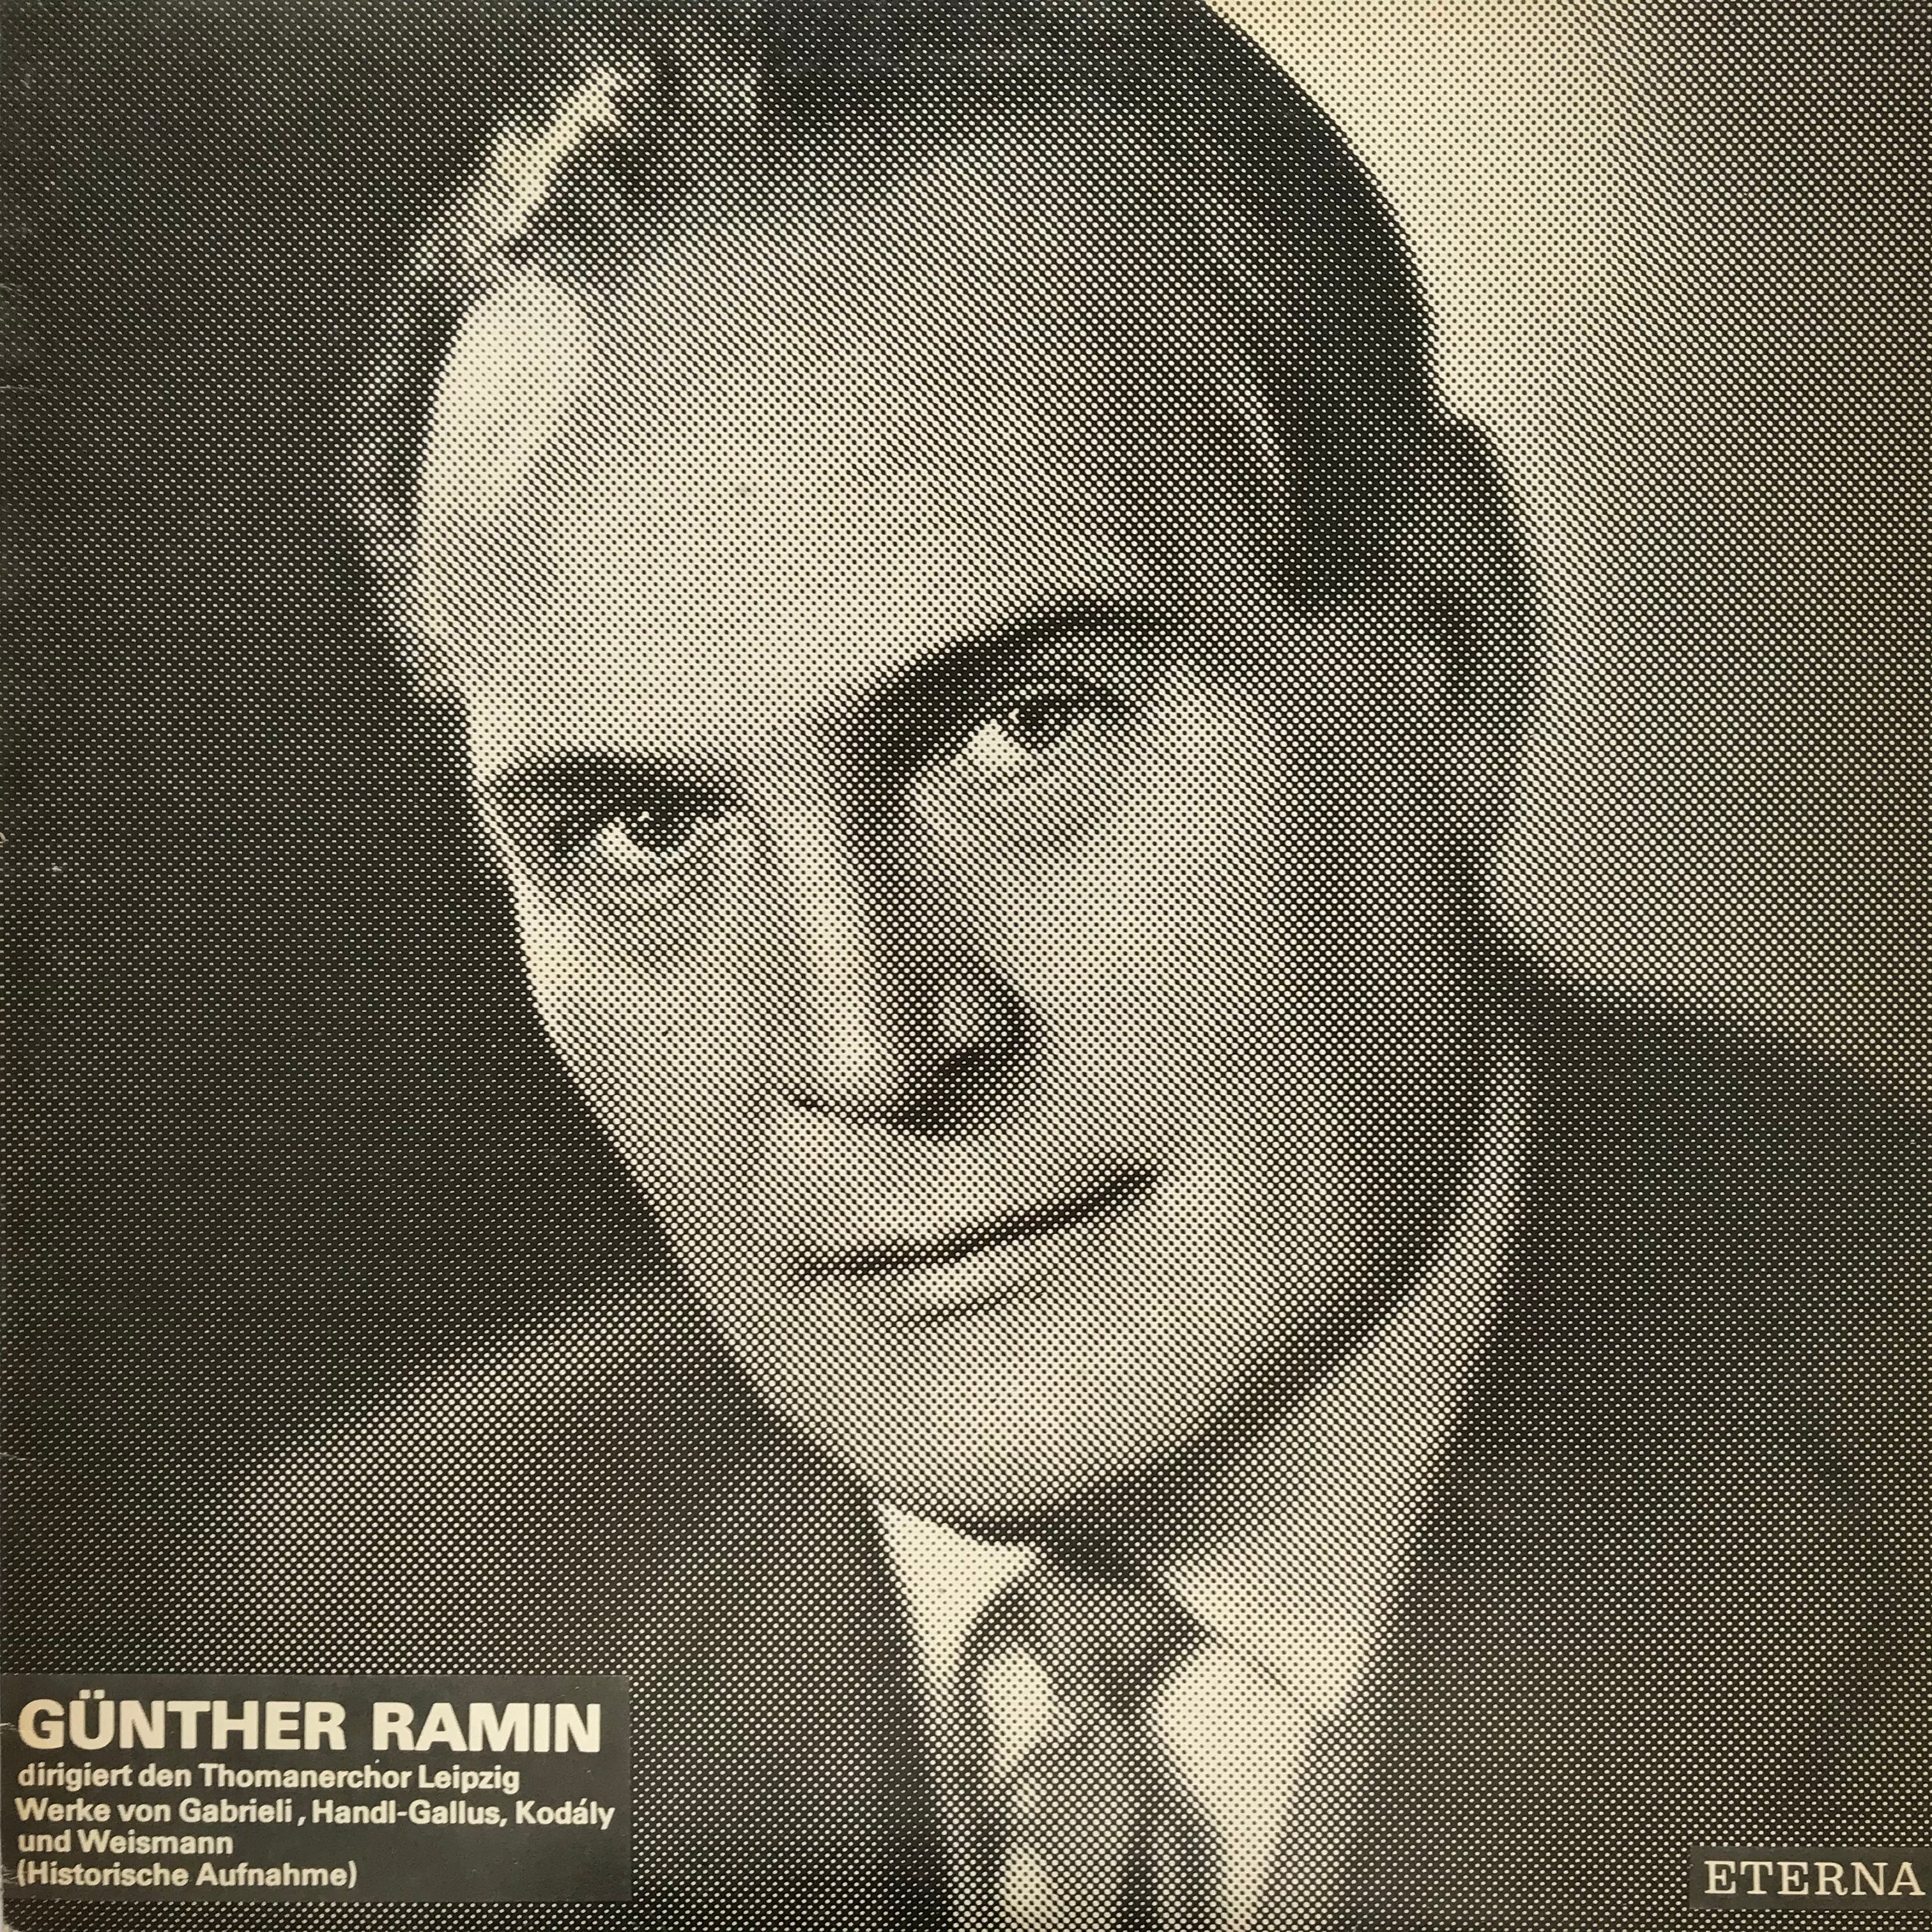 Günther Ramin dirigiert den Thomanerchor Leipzig